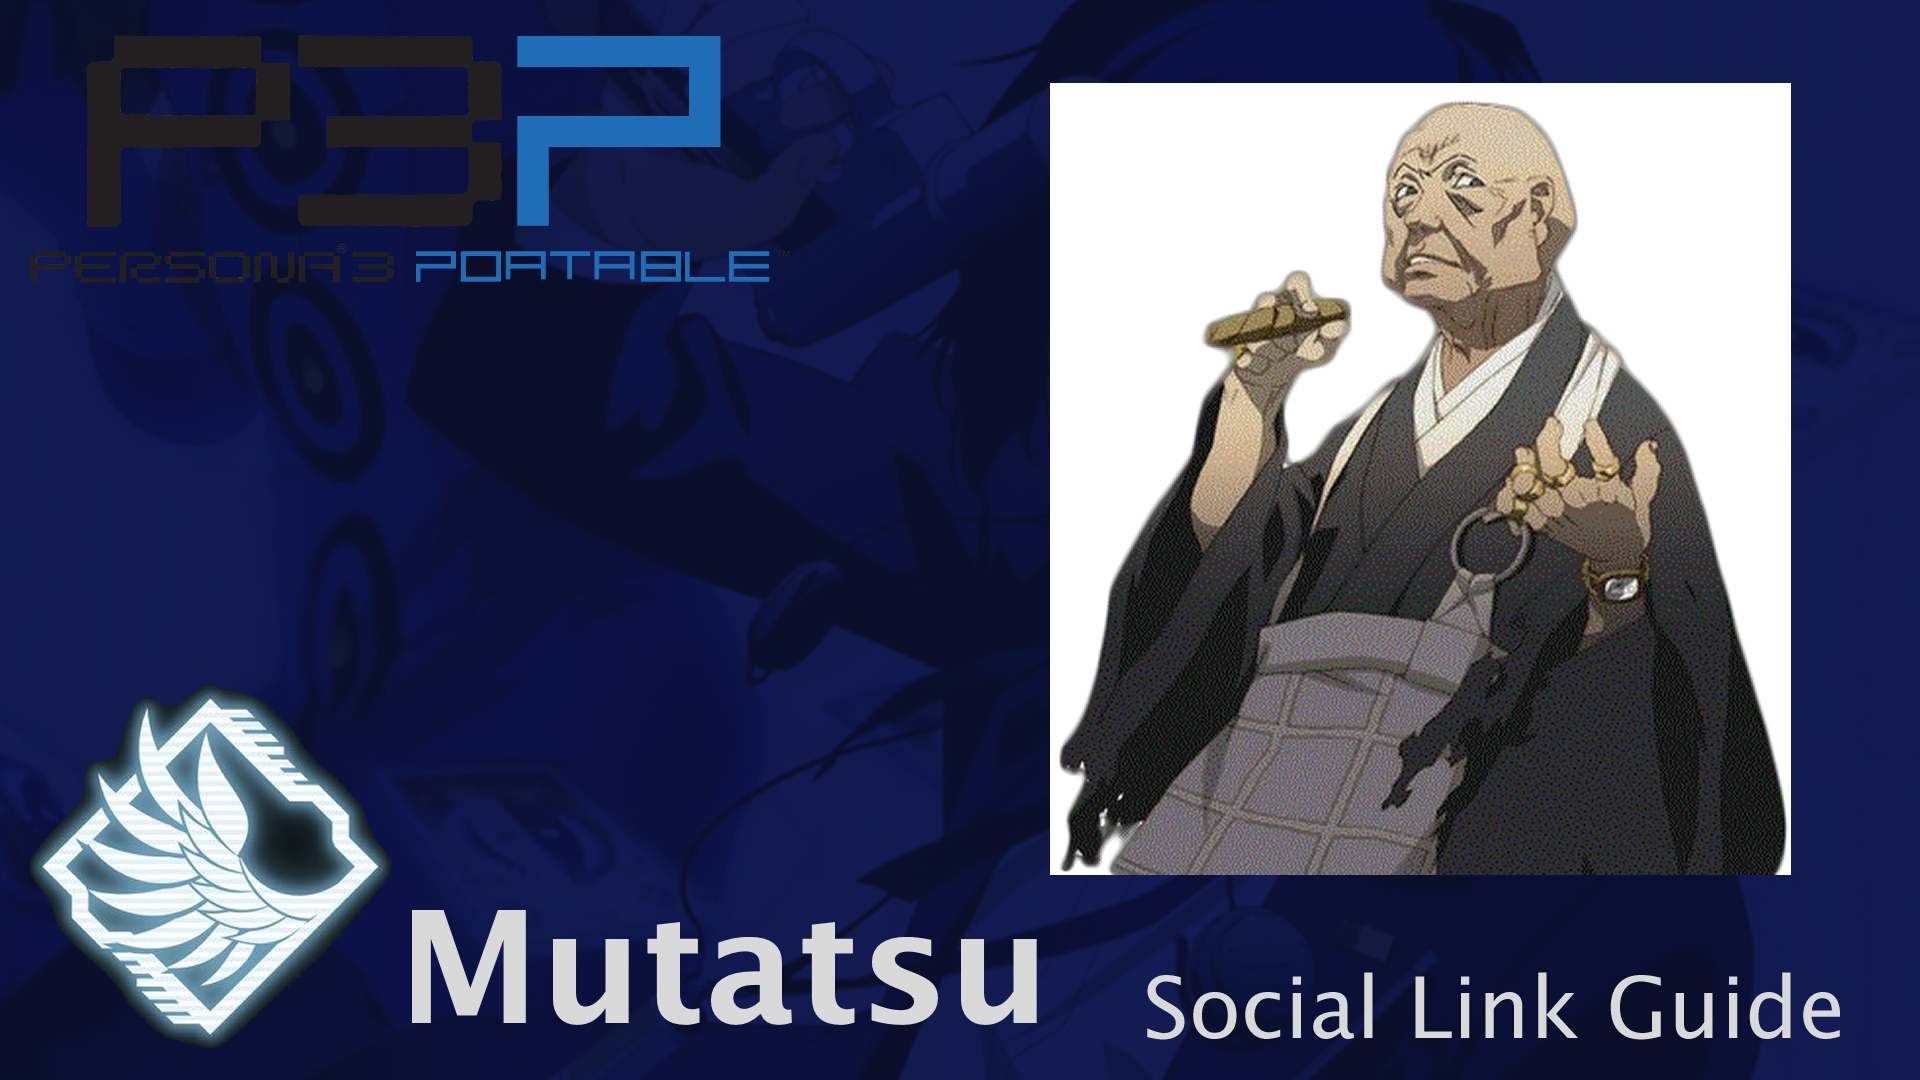 persona-3-portable-mutatsu-social-link-guide